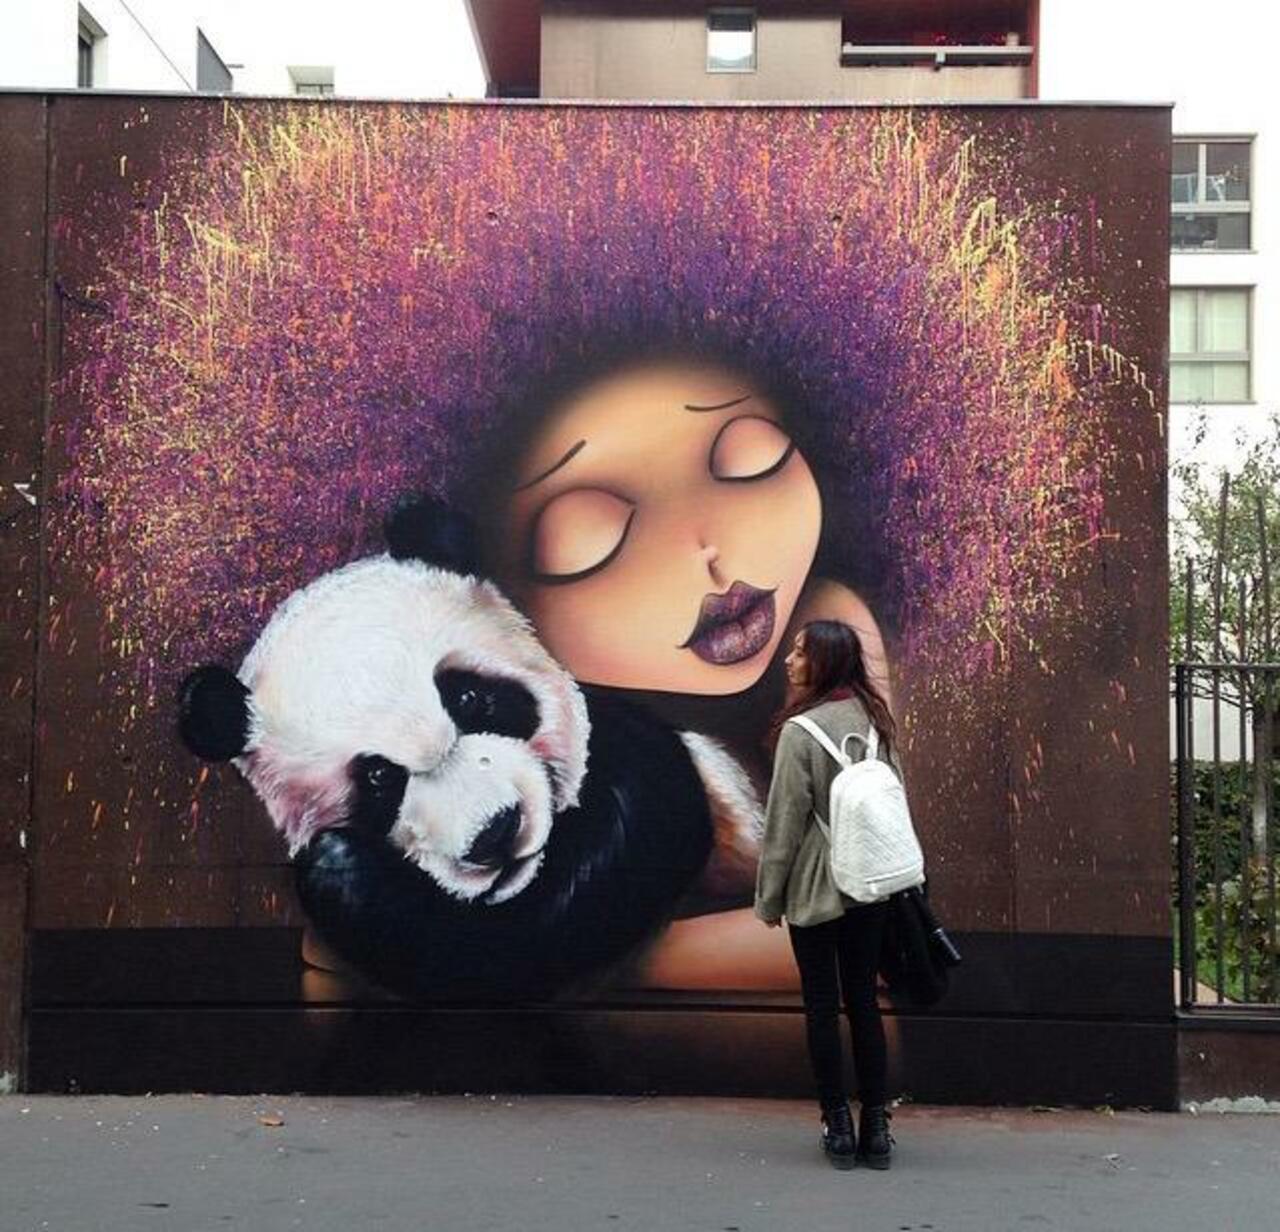 Street Art by VinieGraffiti in Paris 

#art #graffiti #mural #streetart http://t.co/w4RU0P9DoM